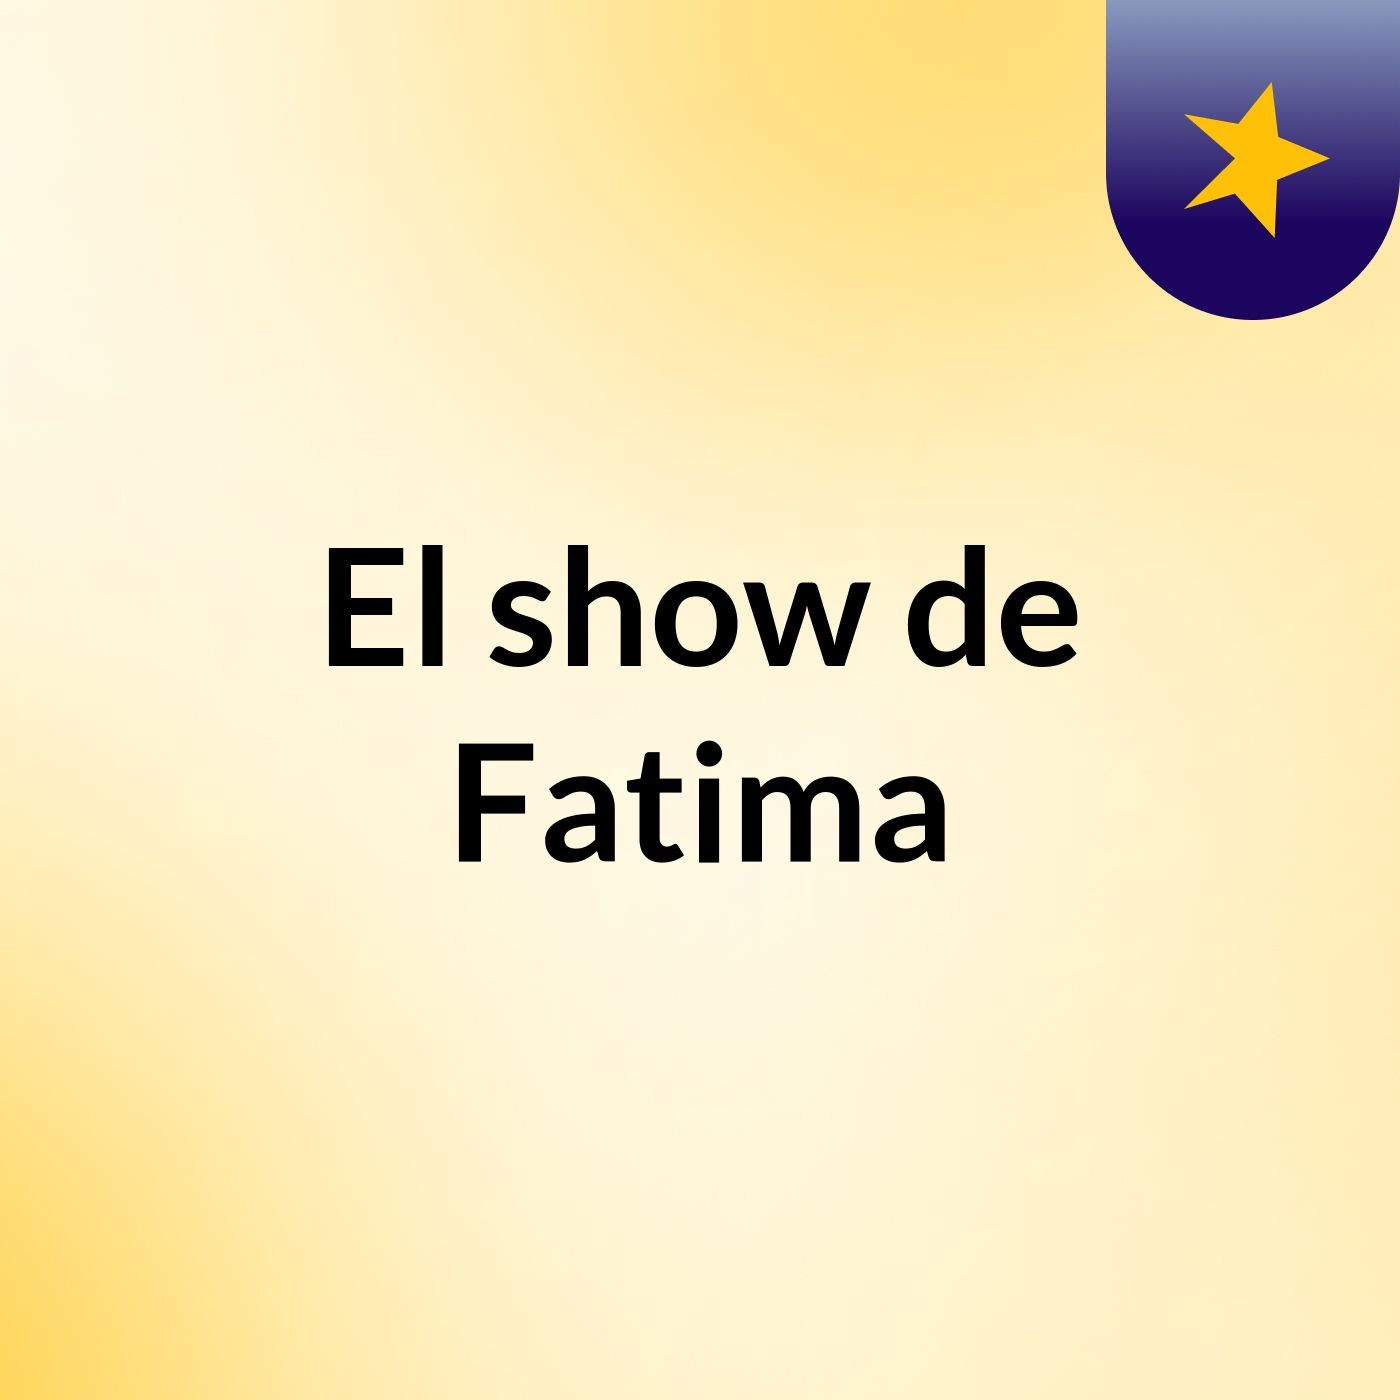 El show de Fatima